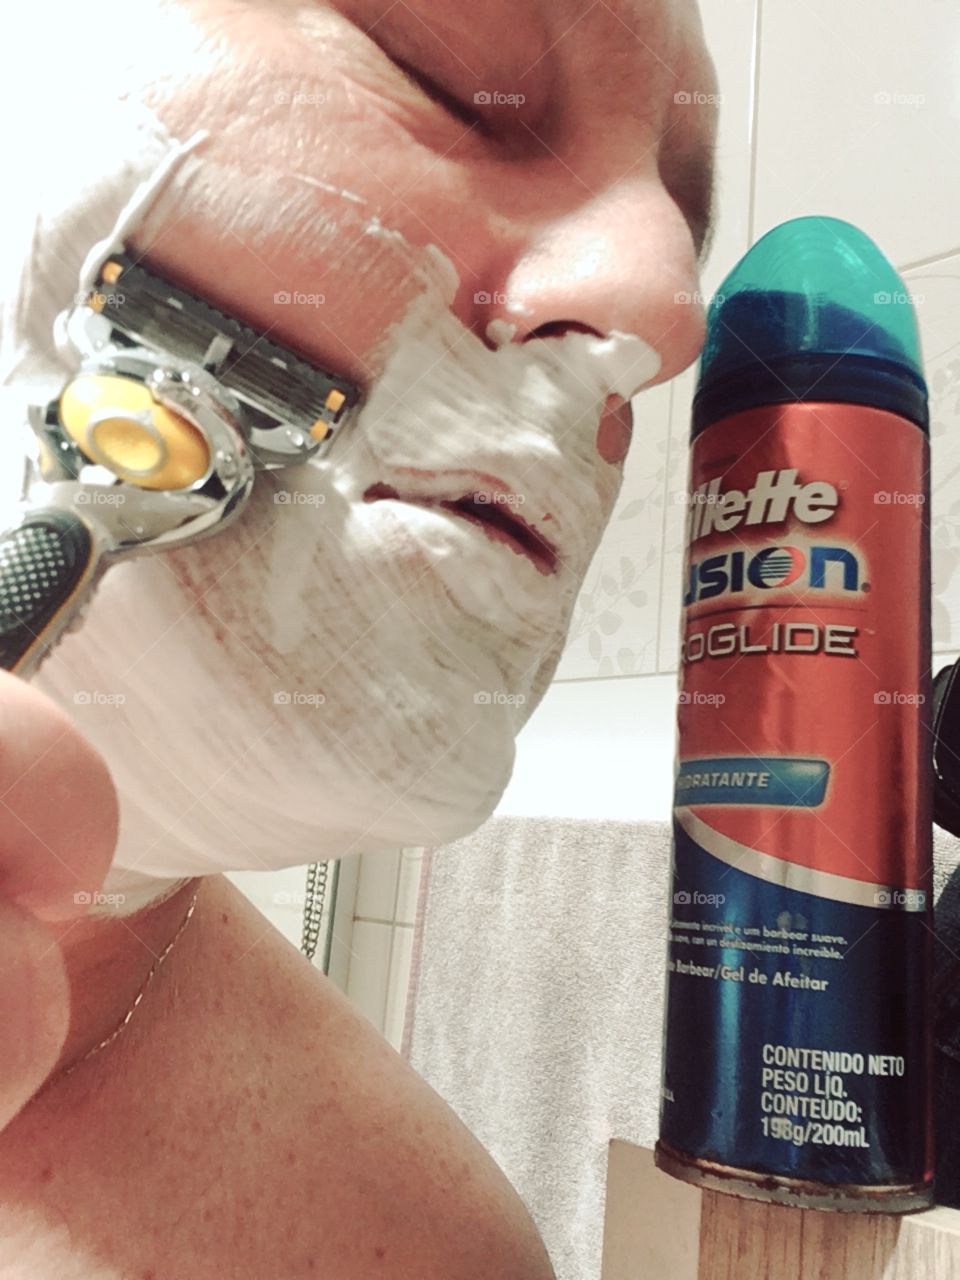 Hora de fazer a barba! Hora de caprichar, e para isso eu uso Gillette. This is my ritual!